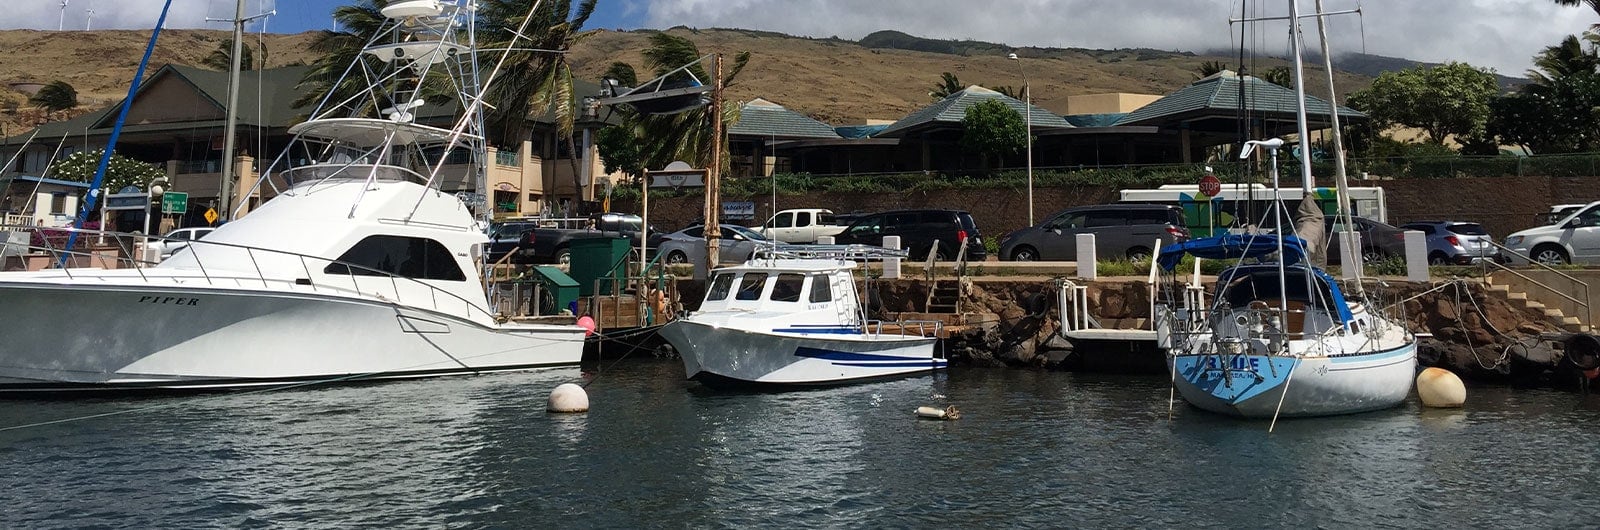 Top 5 Maui Fishing Tours